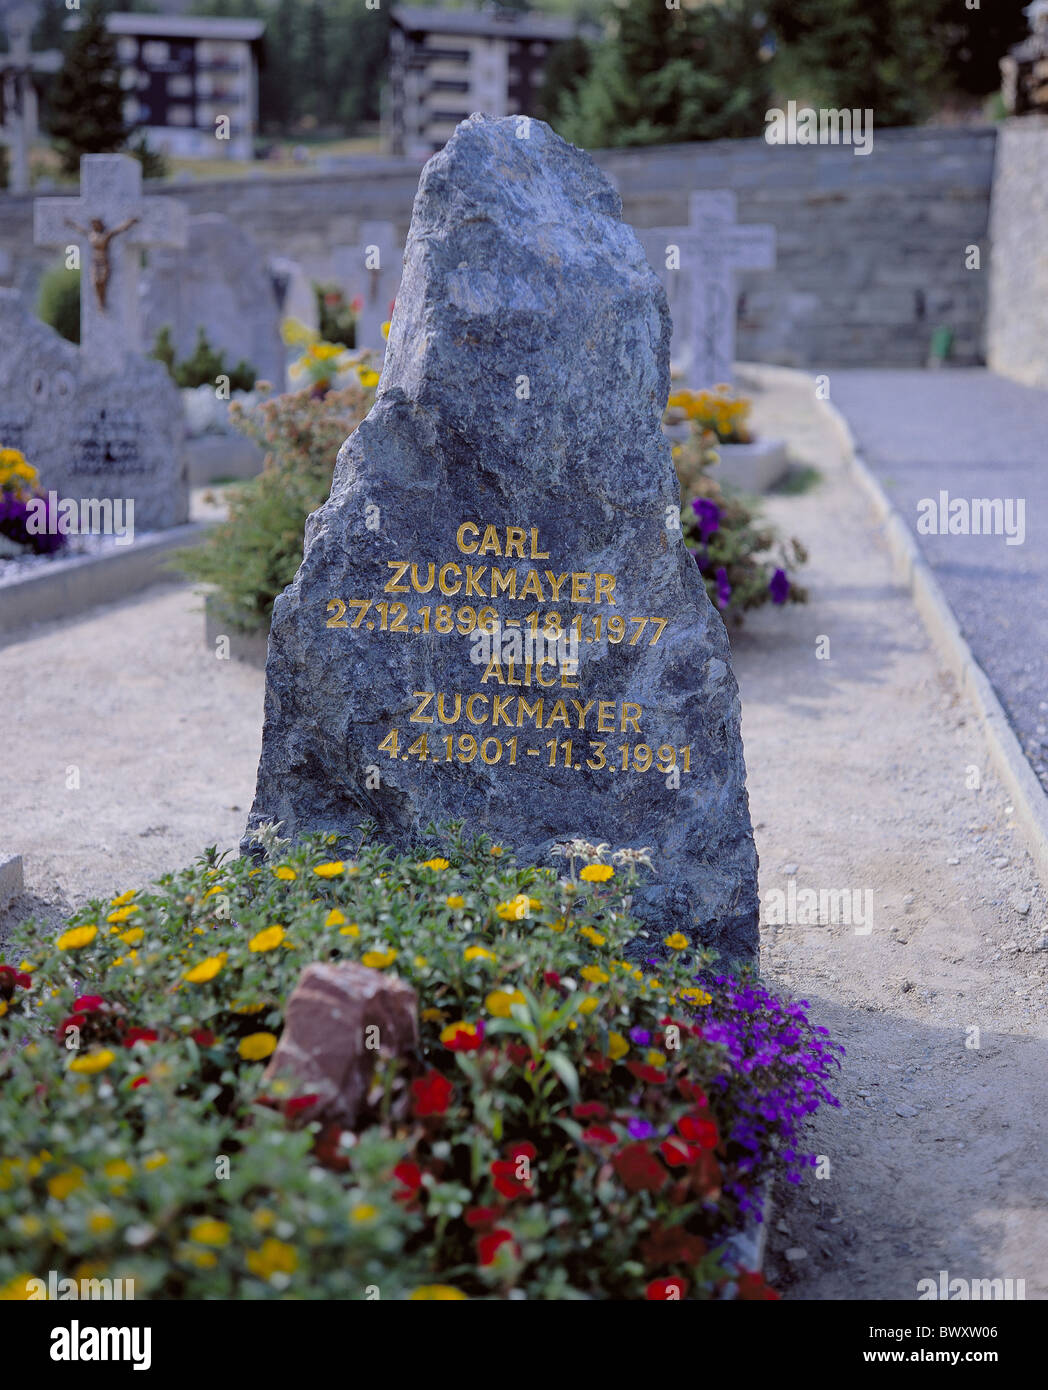 Friedhof-Grabstein von Alice und Carl Zuckmayer Blumen Schweiz Europa  Wallis Saas Fee Stockfotografie - Alamy